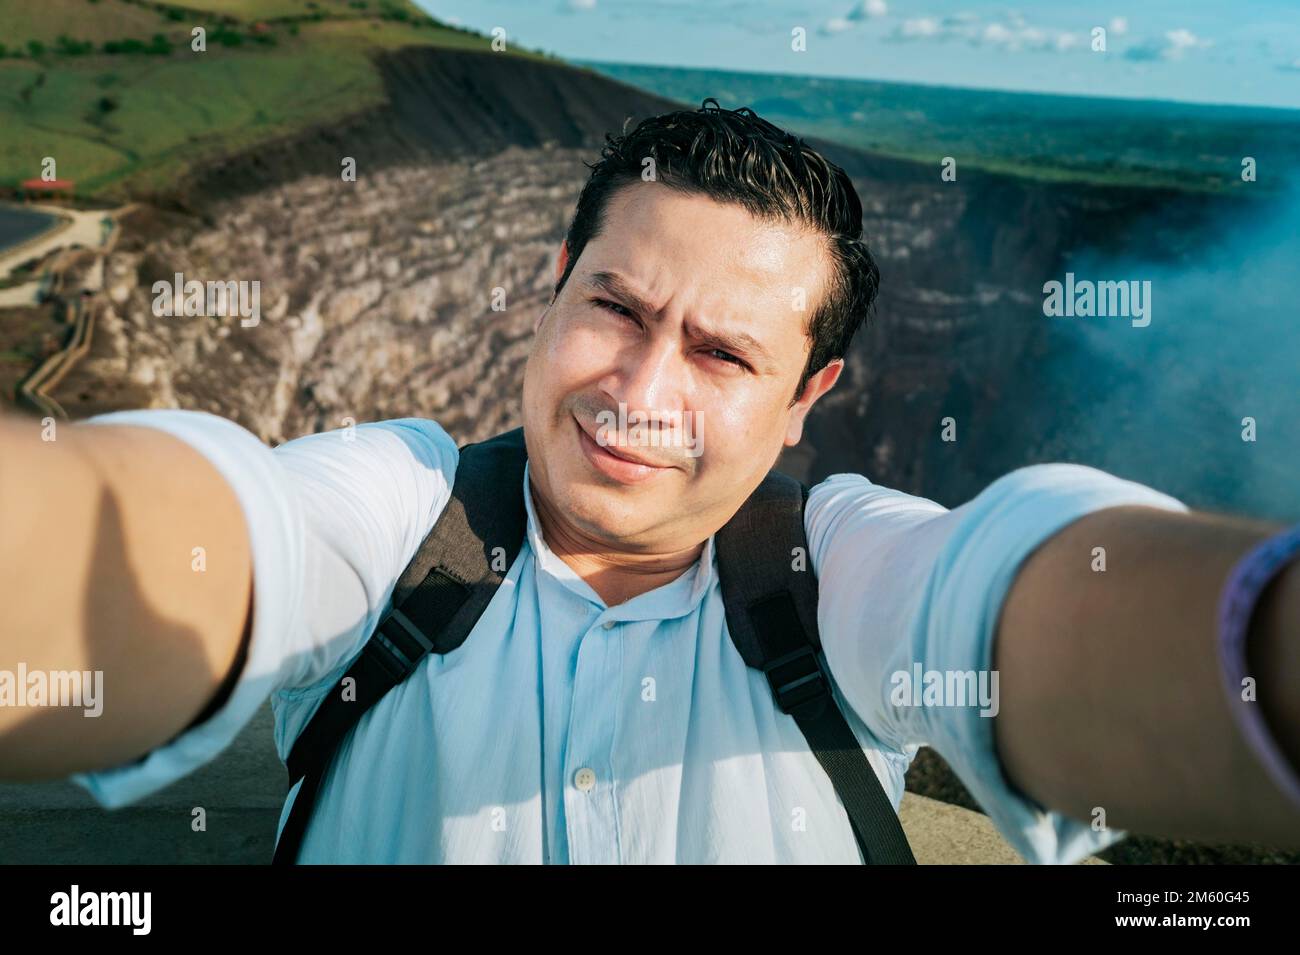 Persone avventurose che prendono un selfie in un punto di vista. Primo piano di persona che prende un selfie avventura, turista che prende un selfie in un punto di vista. Bello Foto Stock